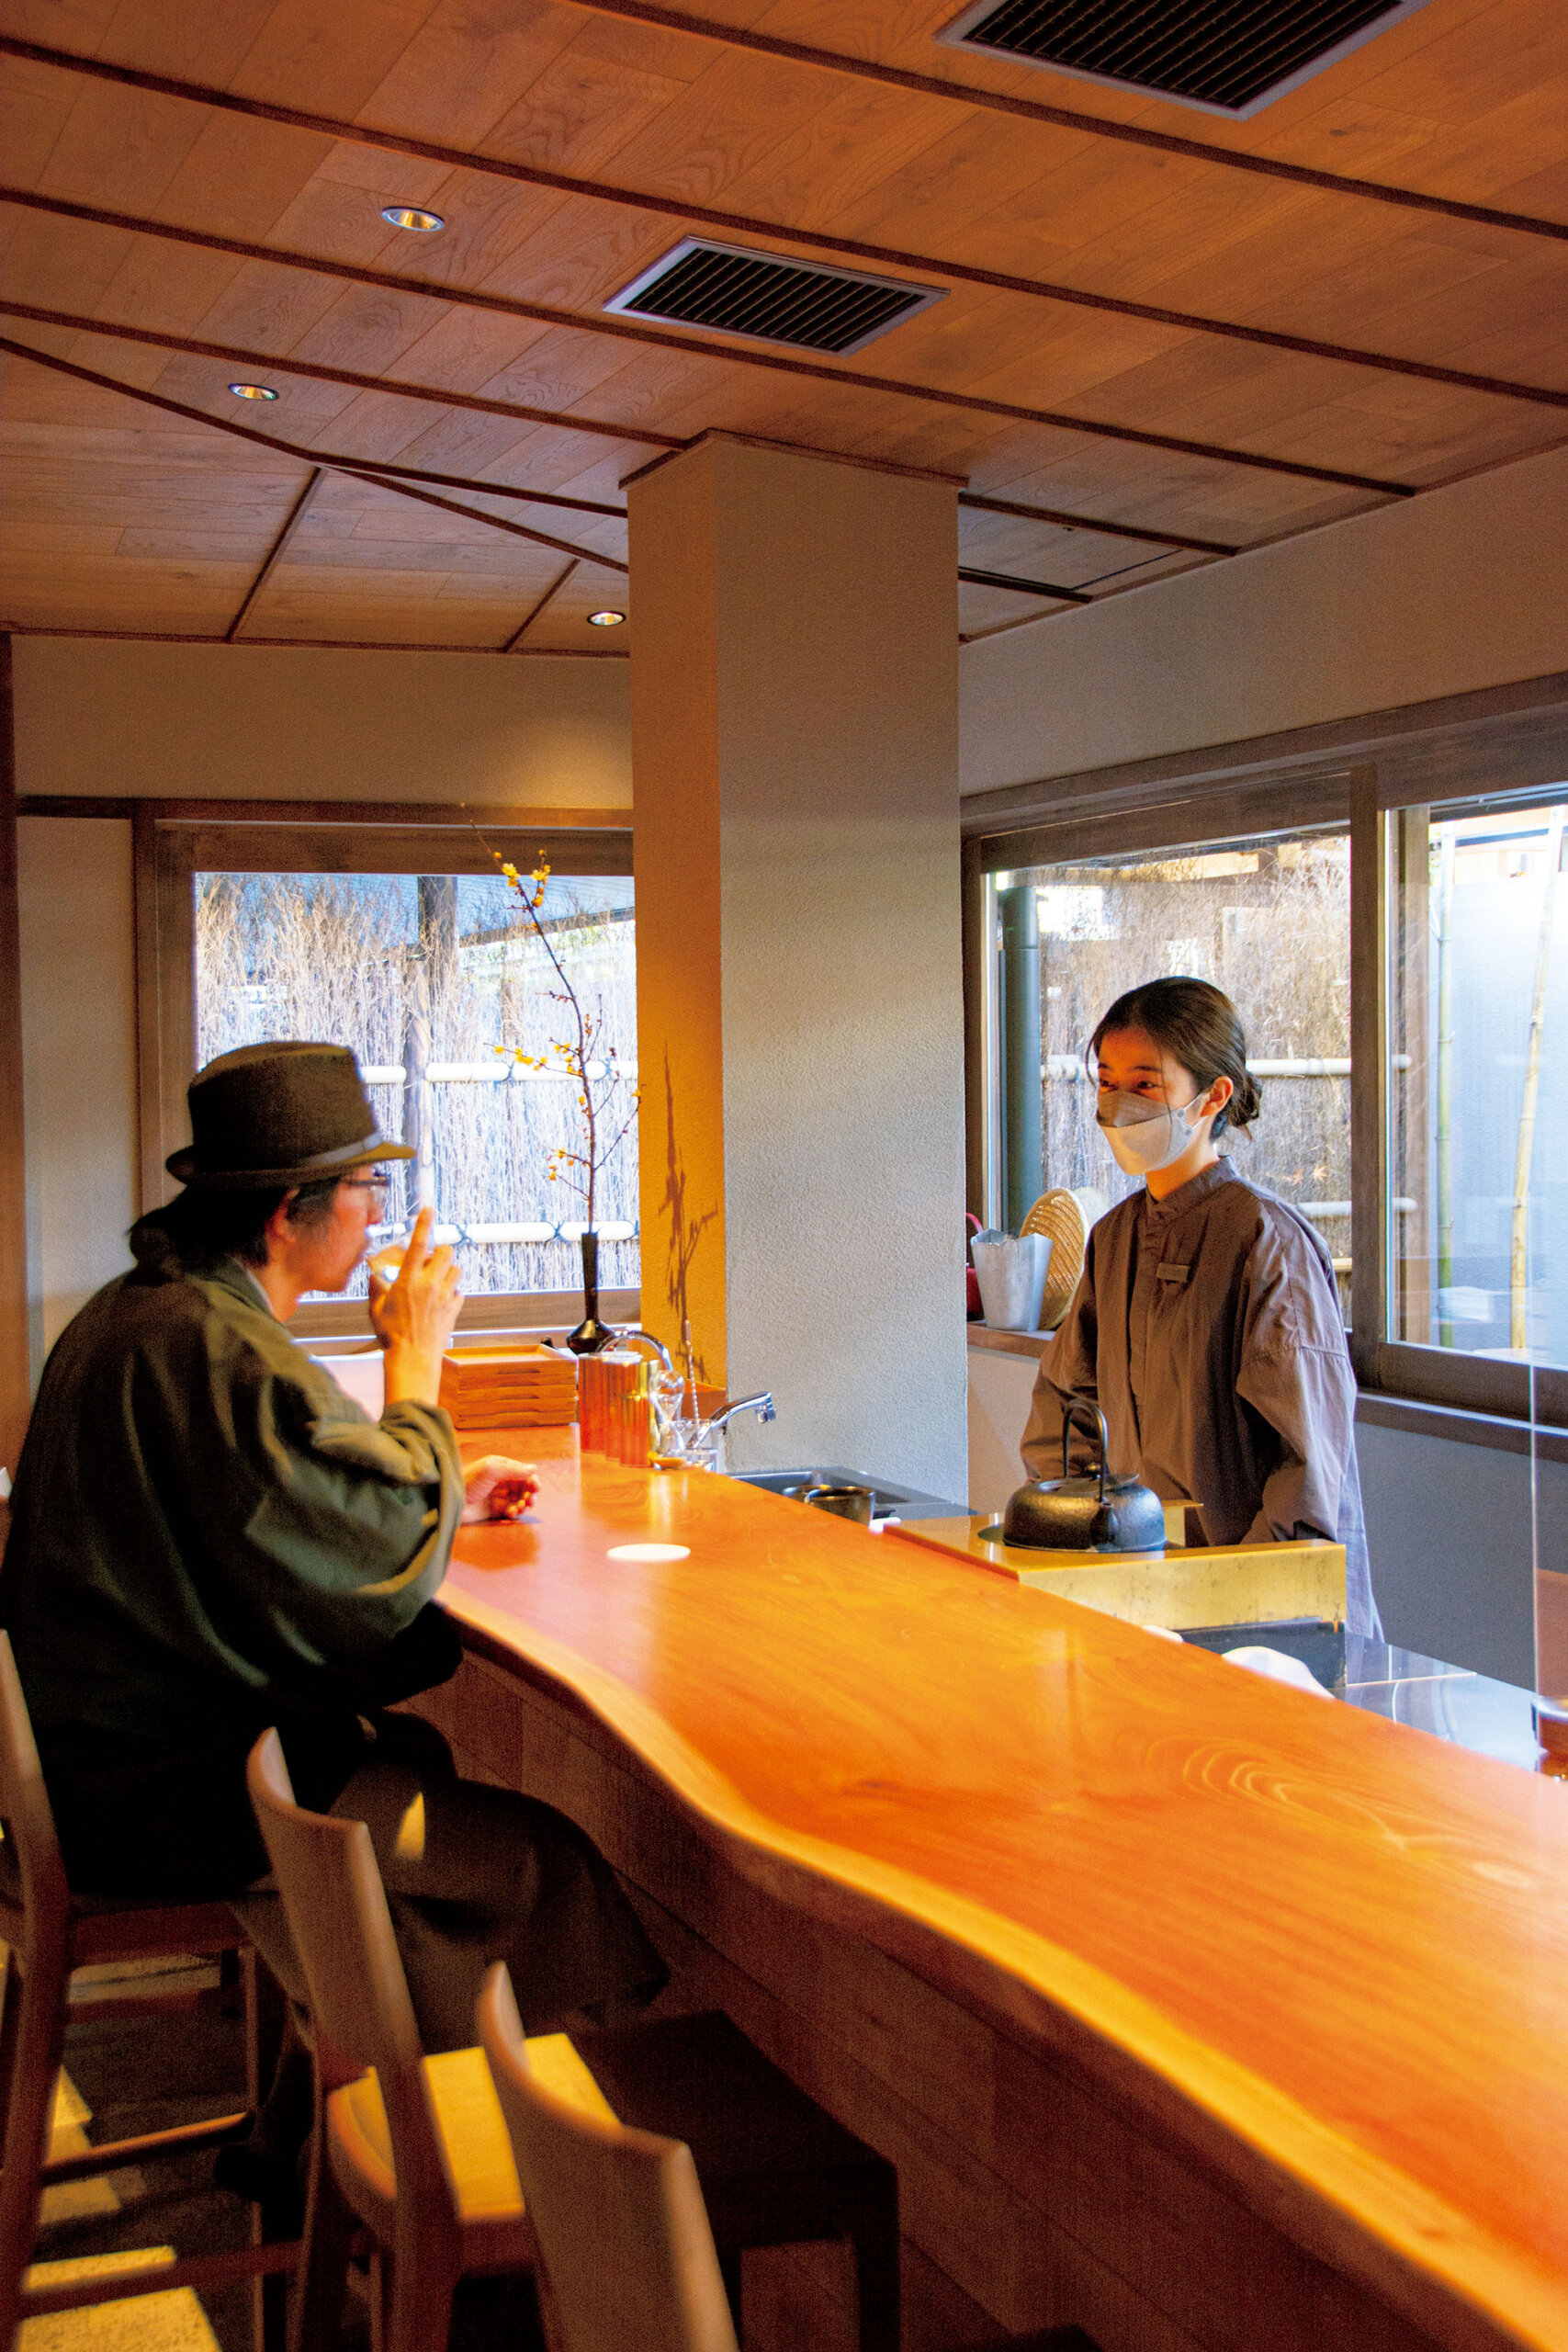 『由縁別邸 代田』。かつて茶業で栄えた代田の文化を継承し、地元の茶師が厳選した日本茶を味わえる<br />
「茶寮月かげ」。バーとしても楽しめる